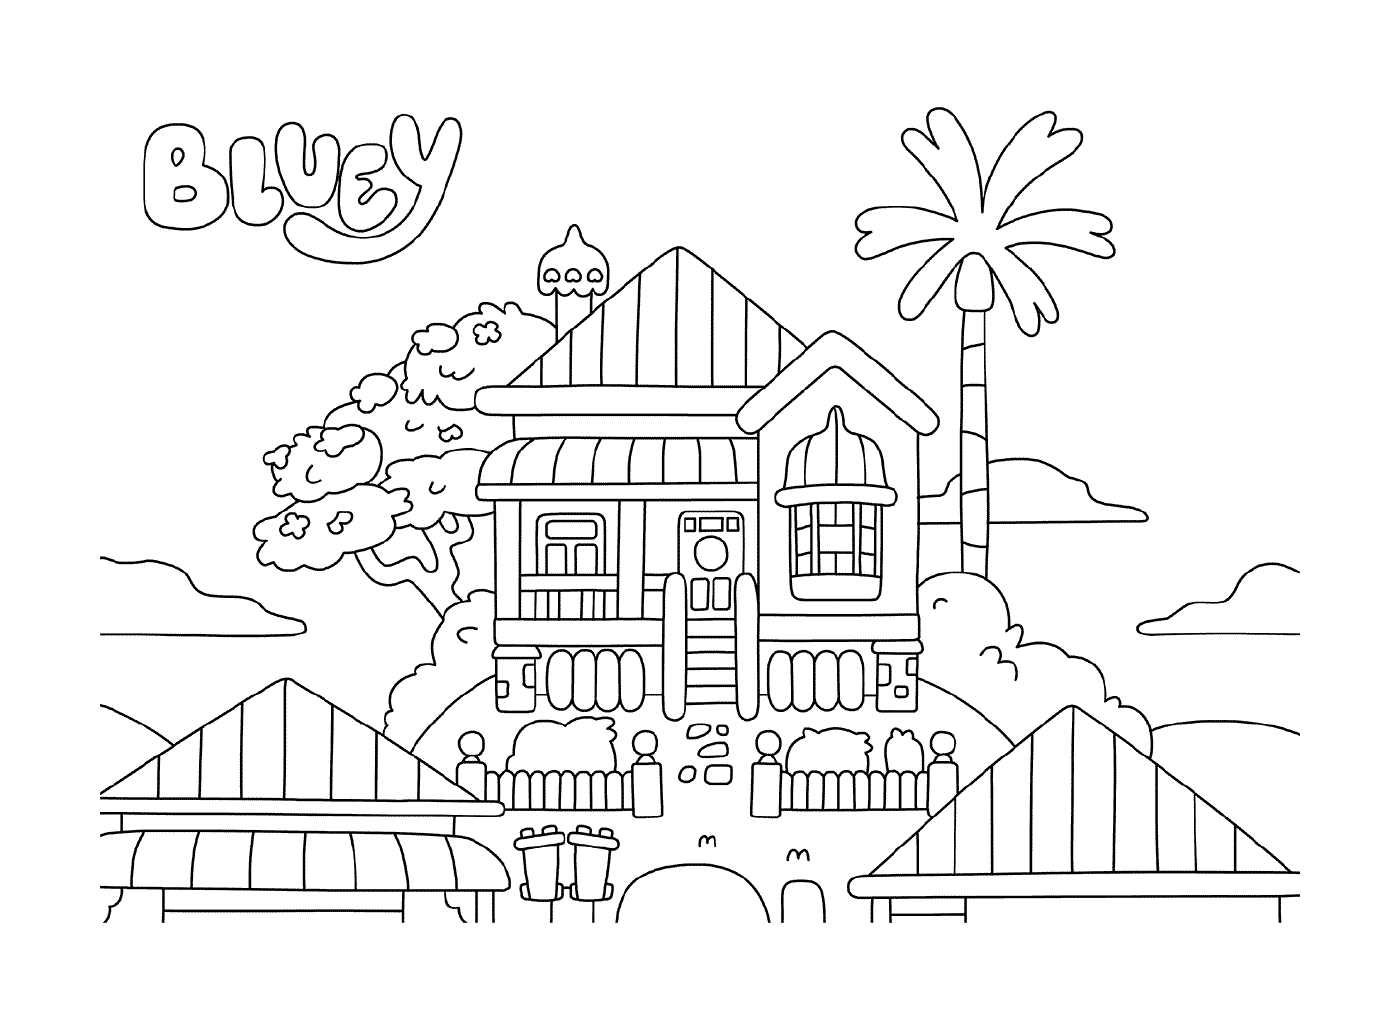  एक खजूर के पेड़ के साथ एक घर 